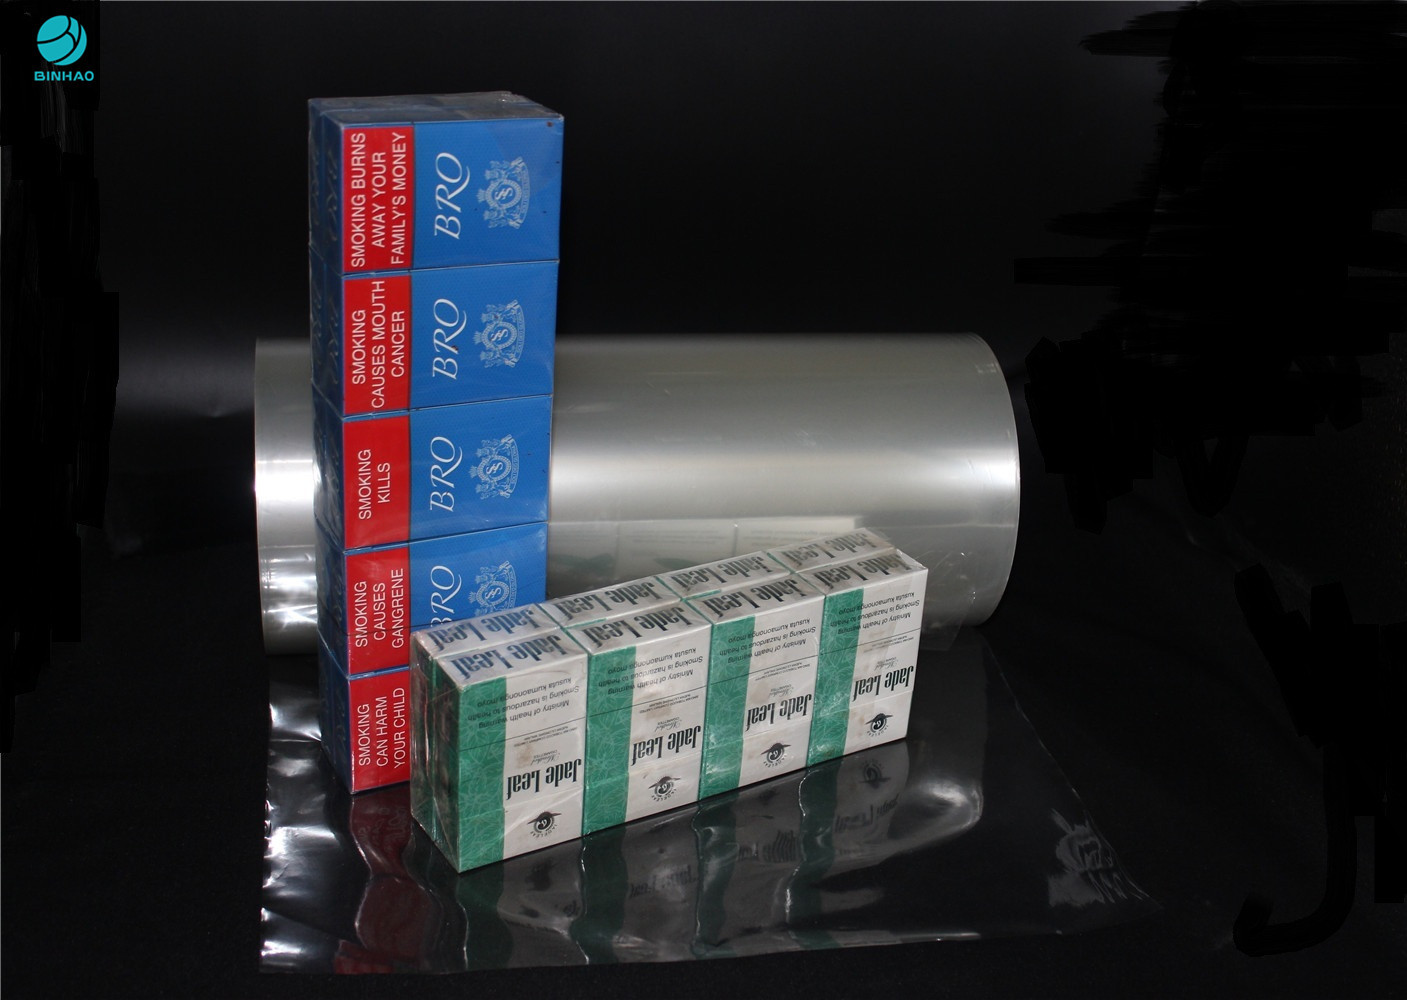 Hohe Transparenz PVC-Verpackungsfolie für den nackten Zigaretten-Kasten, der keine statische Elektrizität einwickelt